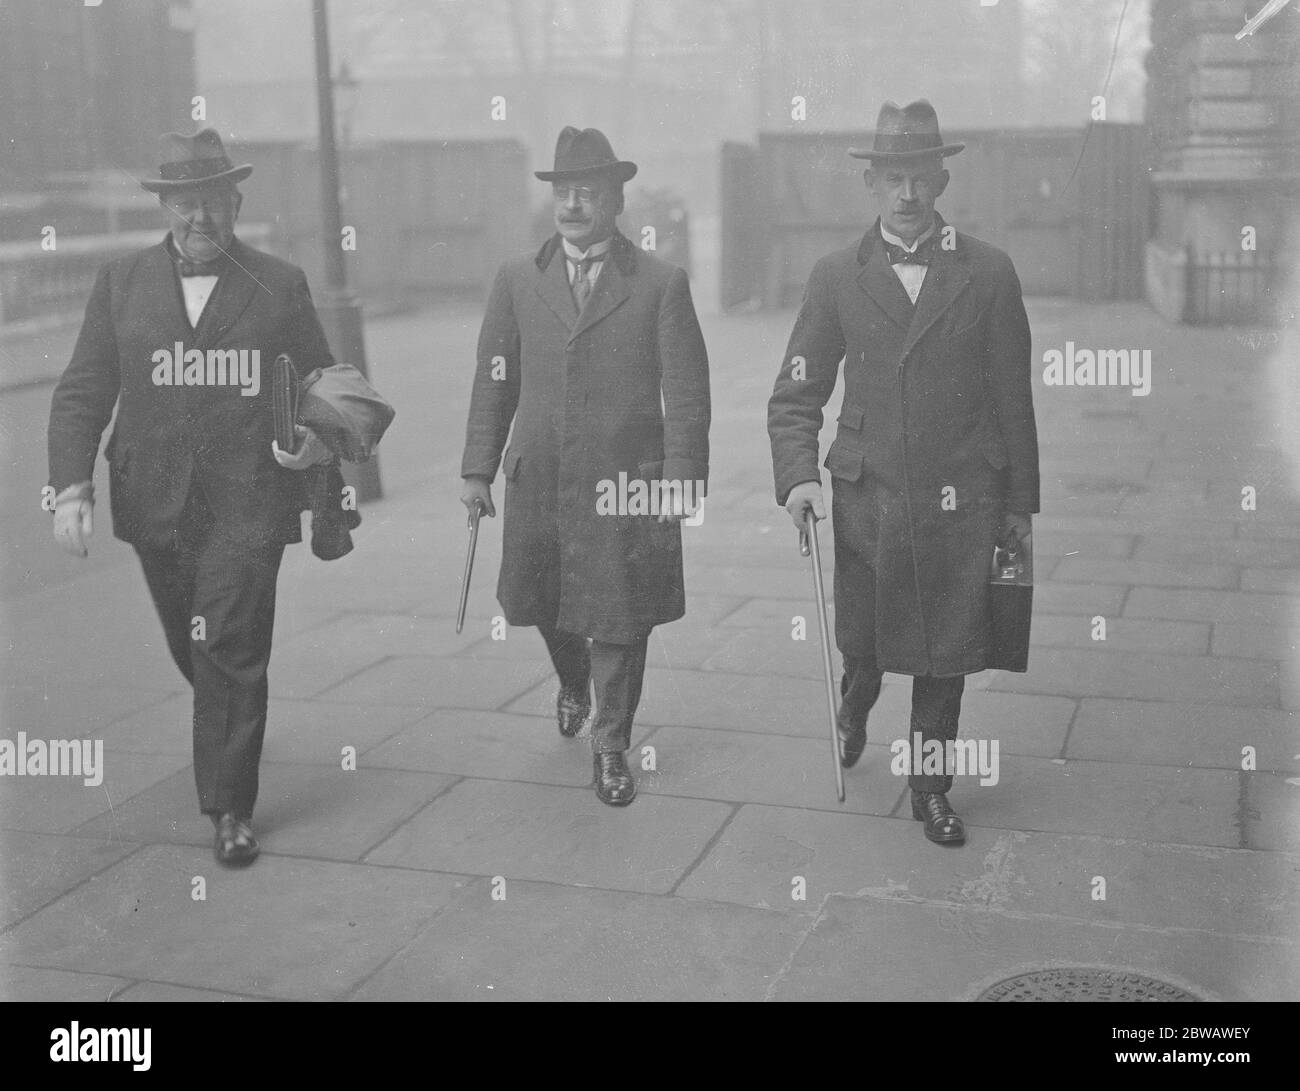 La Conférence irlandaise M. O Higgins , M. Griffiths et M. Duggan , délégués de l'Etat libre , arrivant au Bureau colonial mercredi pour la Conférence irlandaise du 29 mars 1922 Banque D'Images